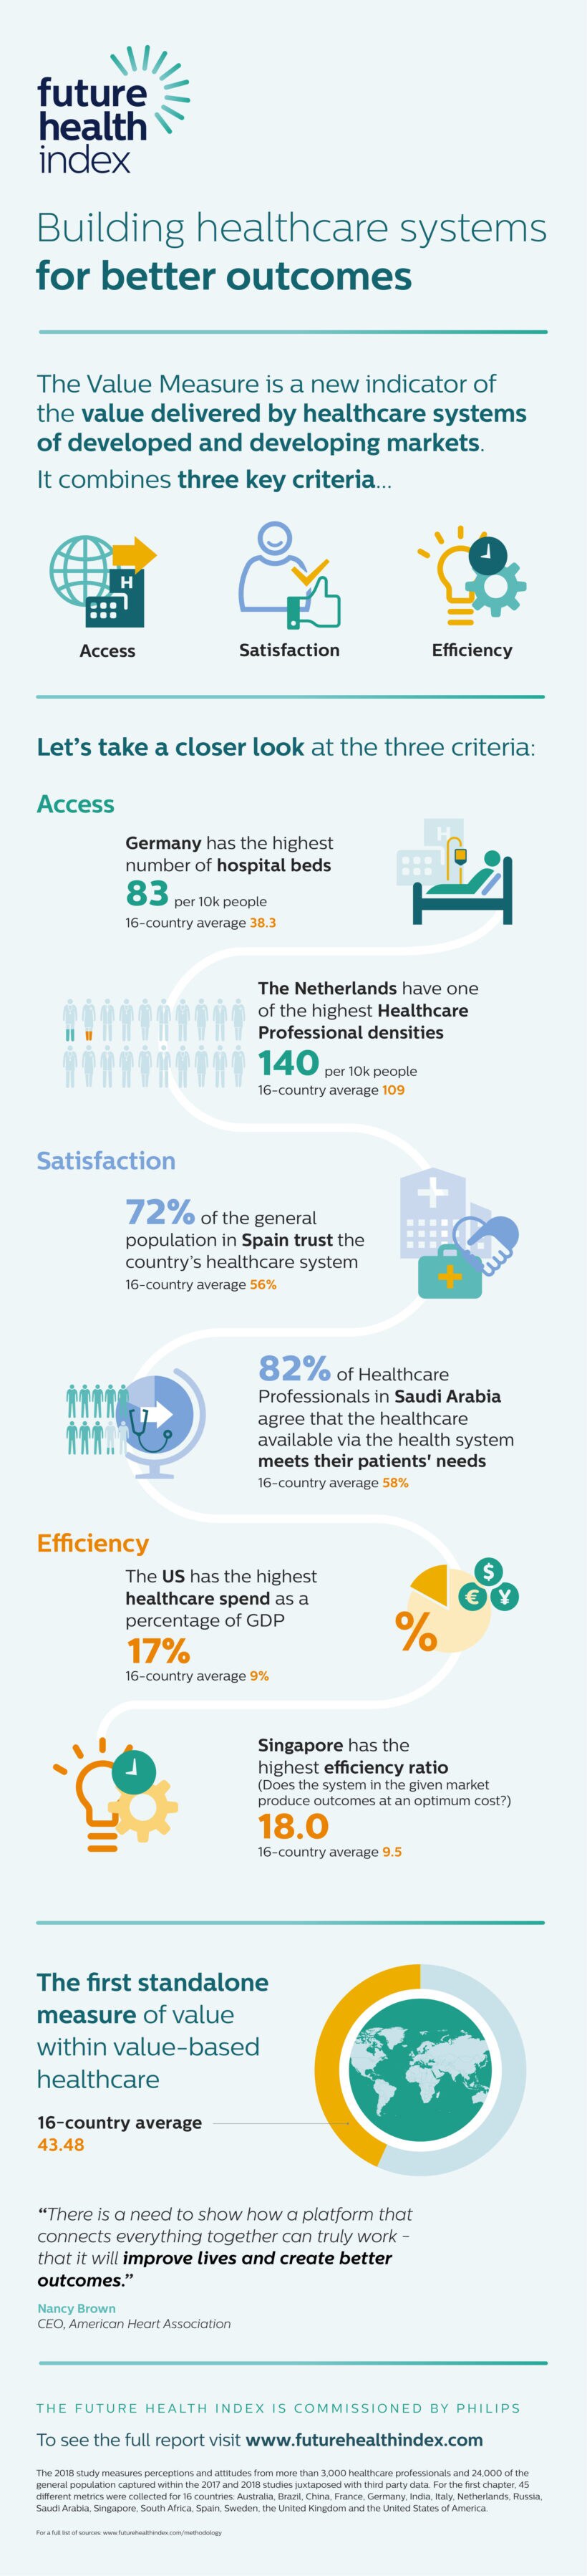 Future Health Index 2018 Infographic